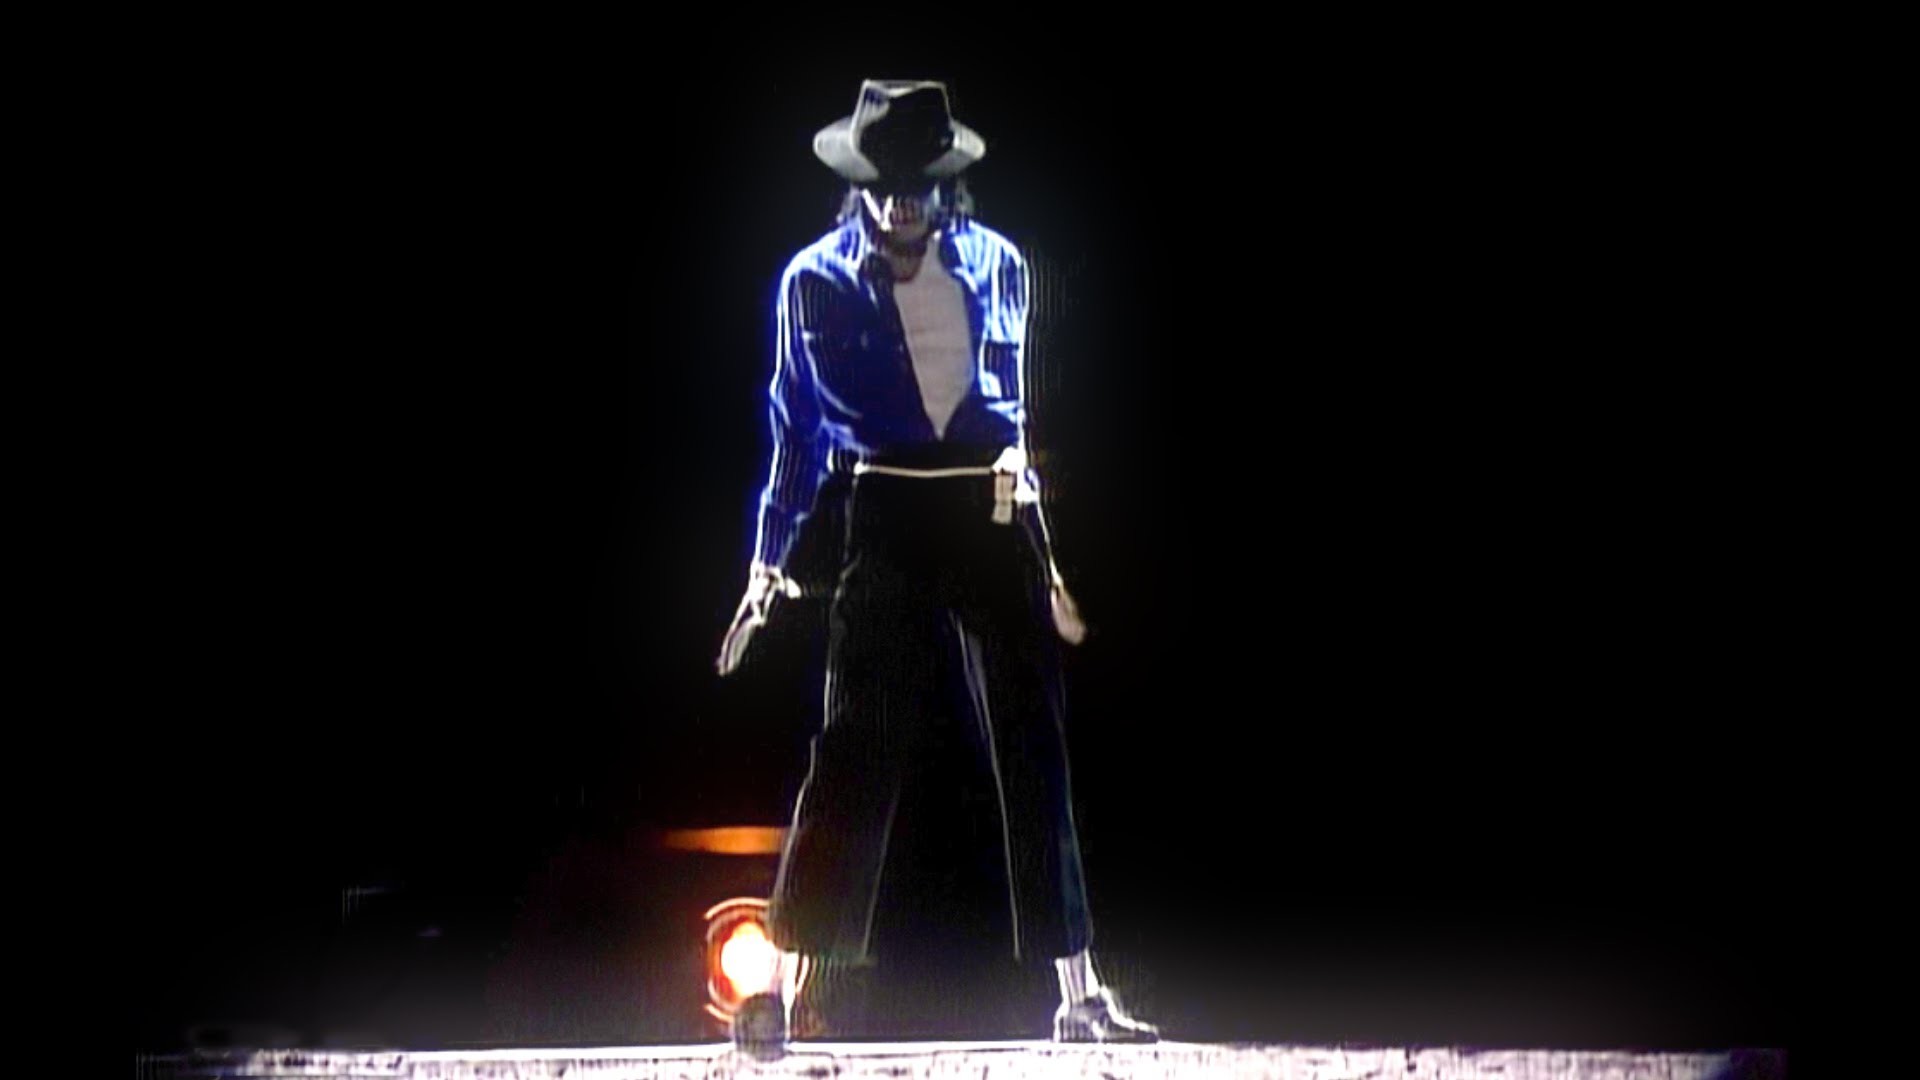 Michael Jackson Dangerous Live 64 Wallpapers 1920x1080